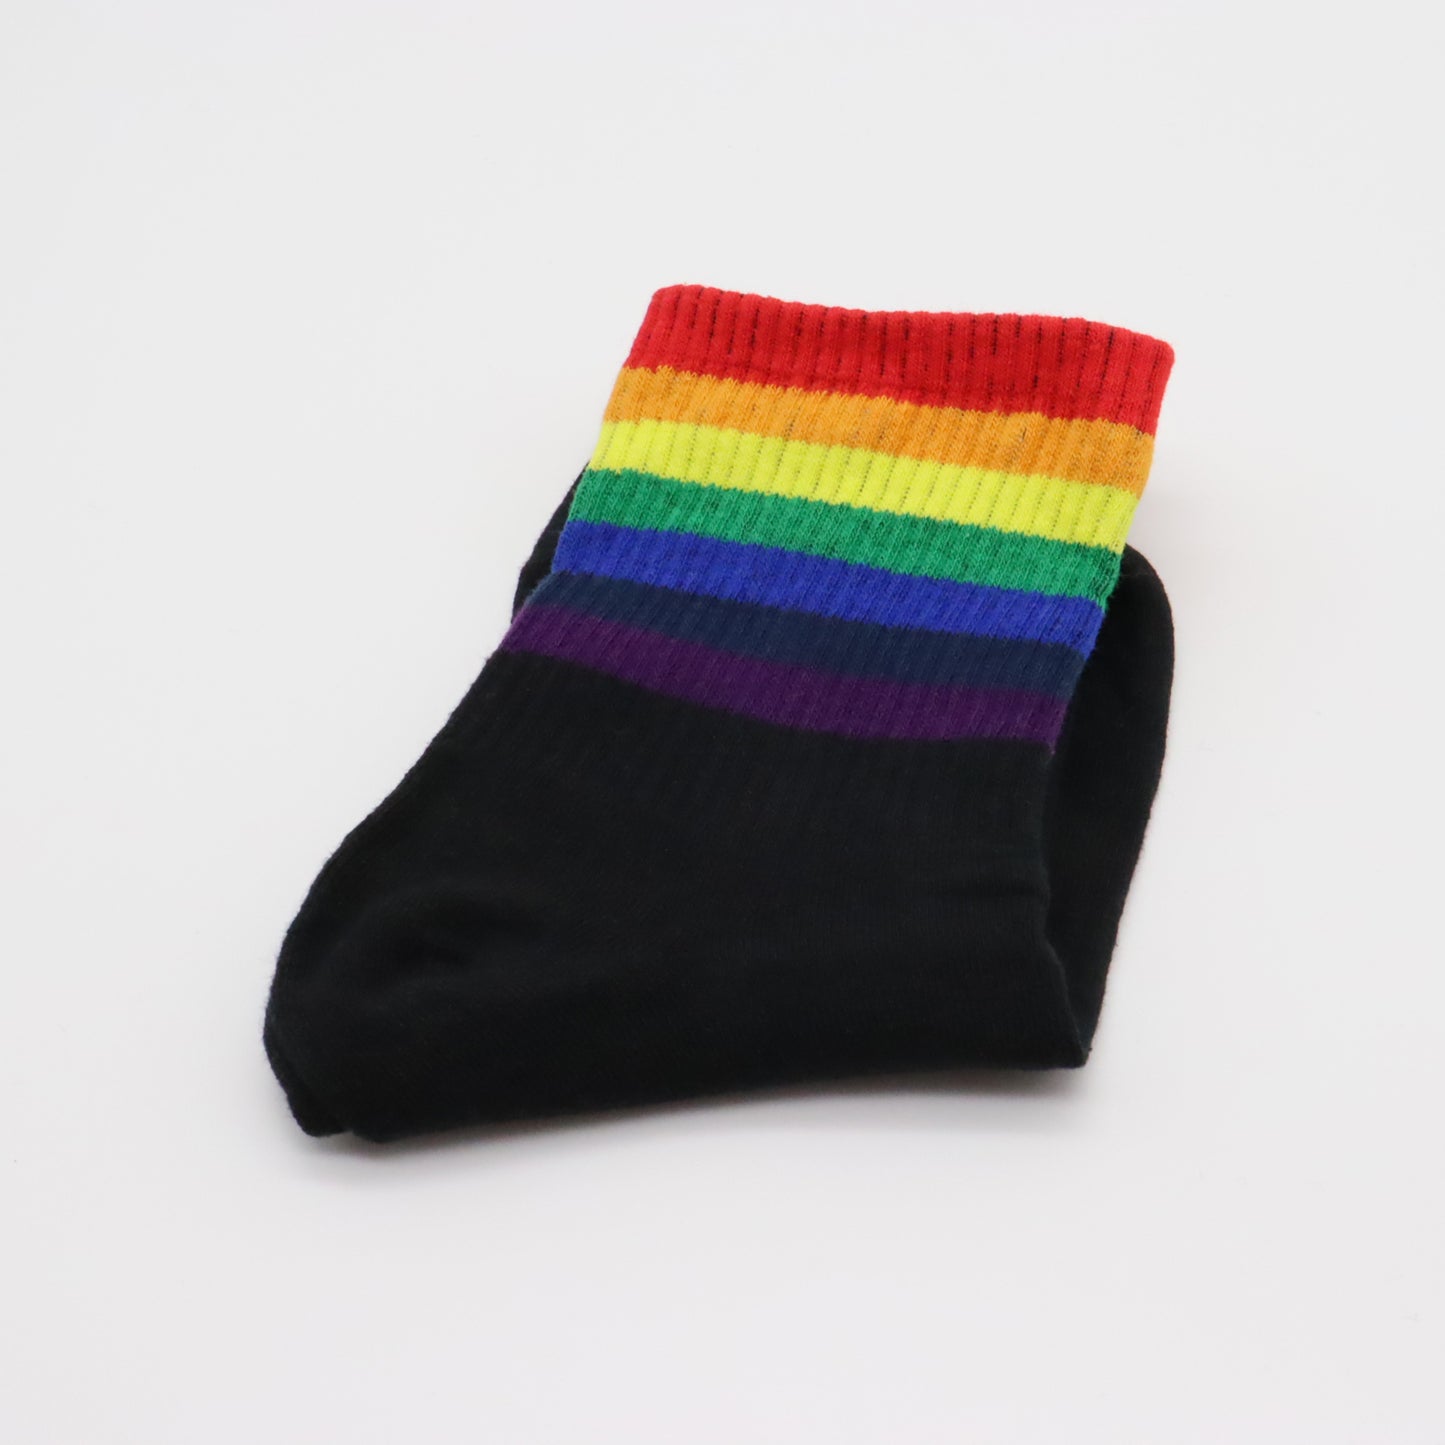 Regenbogen-Socken (Schwarz/Weiß mit Streifen)